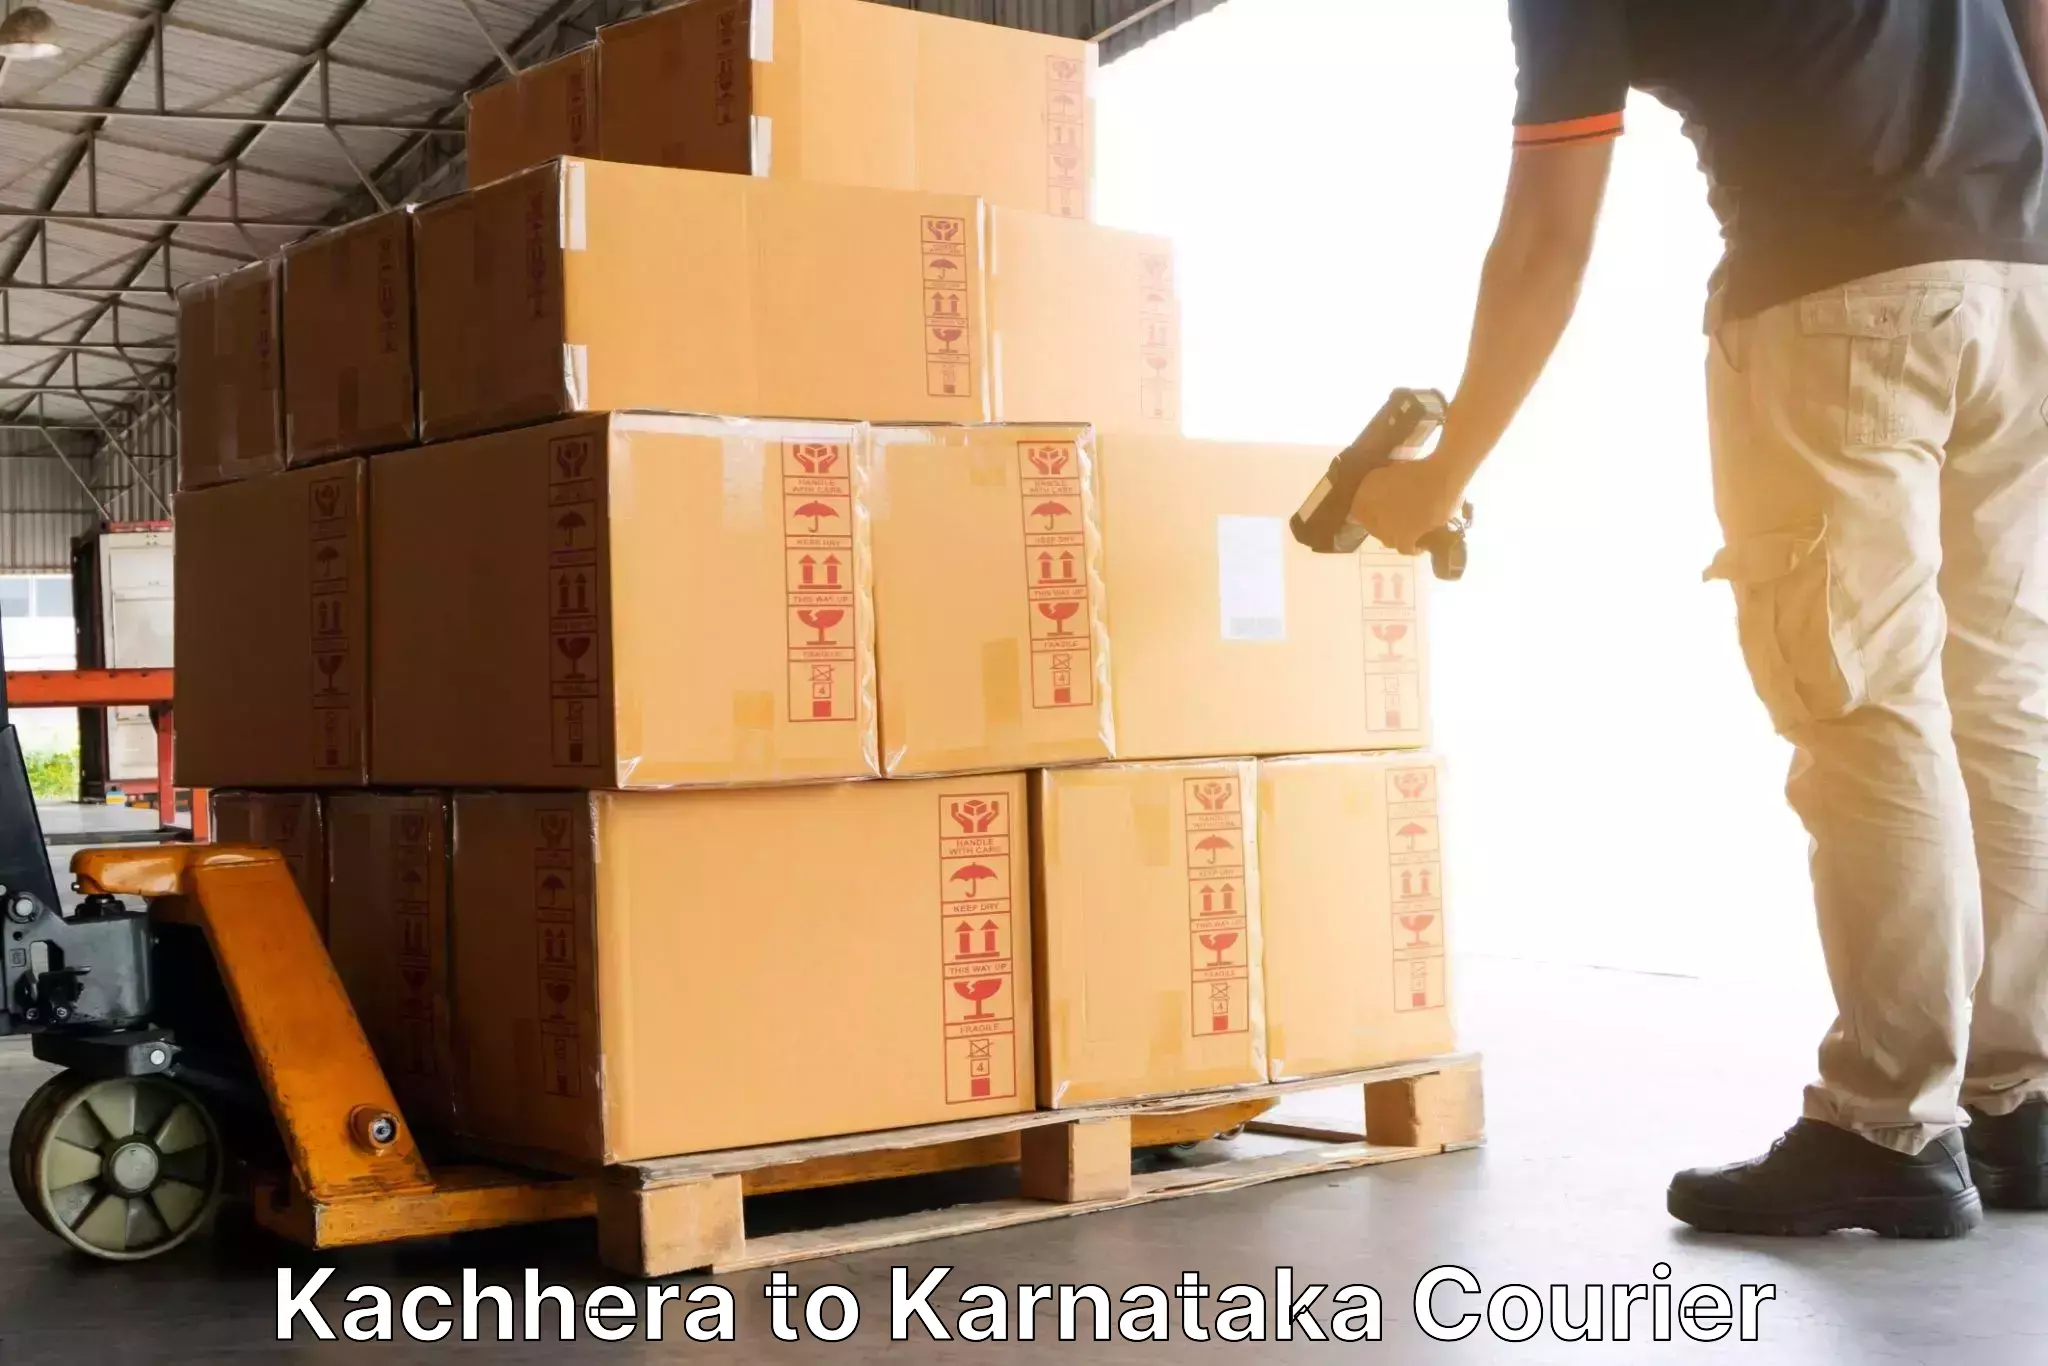 Efficient cargo services Kachhera to Yelburga